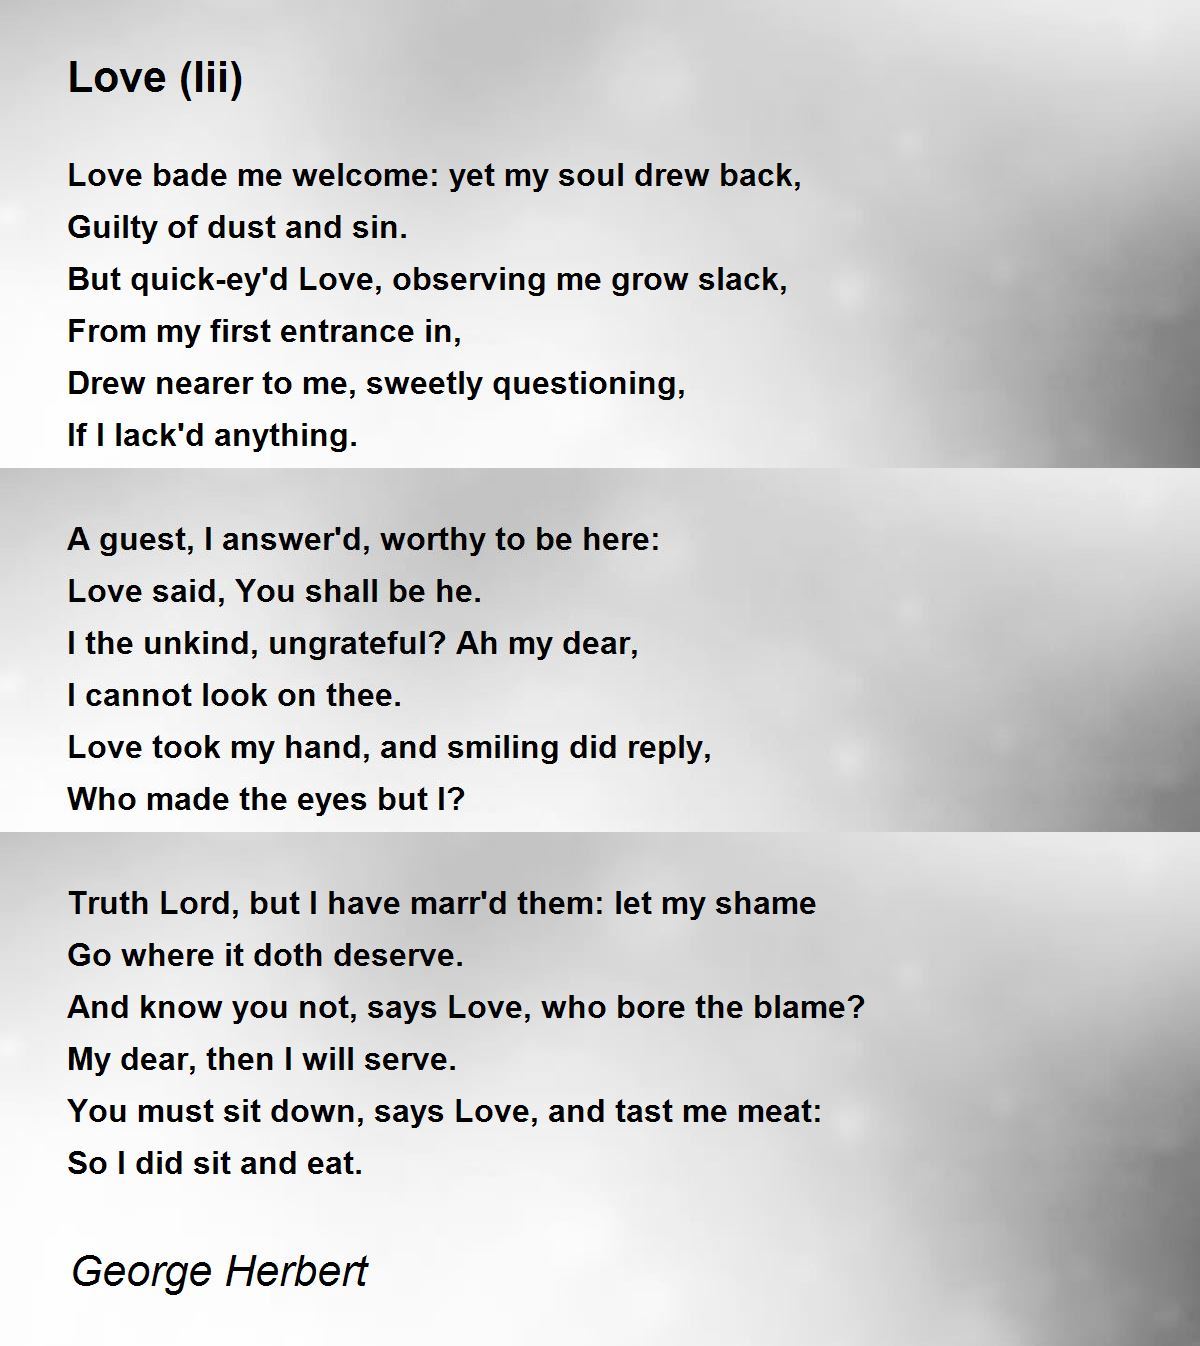 Love (Iii) - Love (Iii) Poem by George Herbert